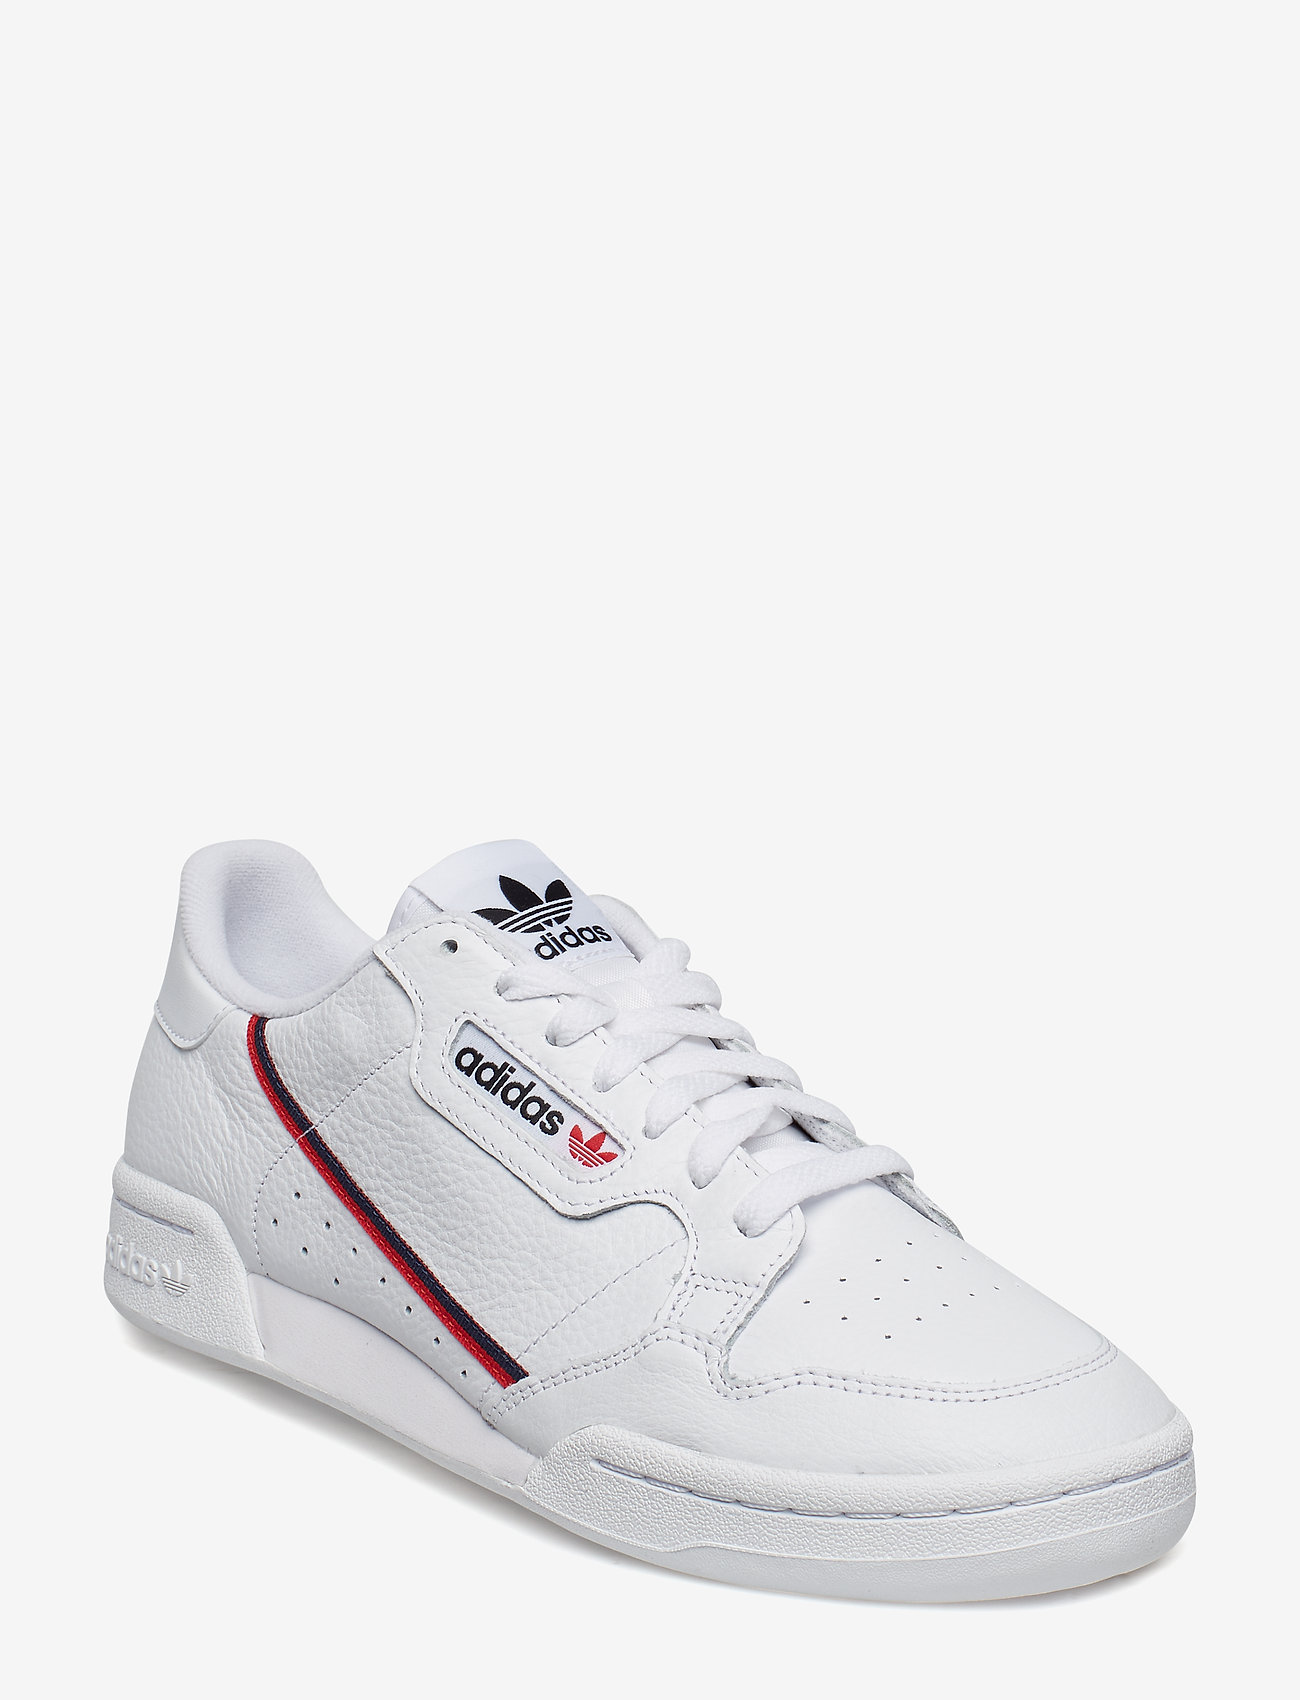 adidas Originals - Continental 80 Shoes - låga sneakers - ftwwht/scarle/conavy - 0